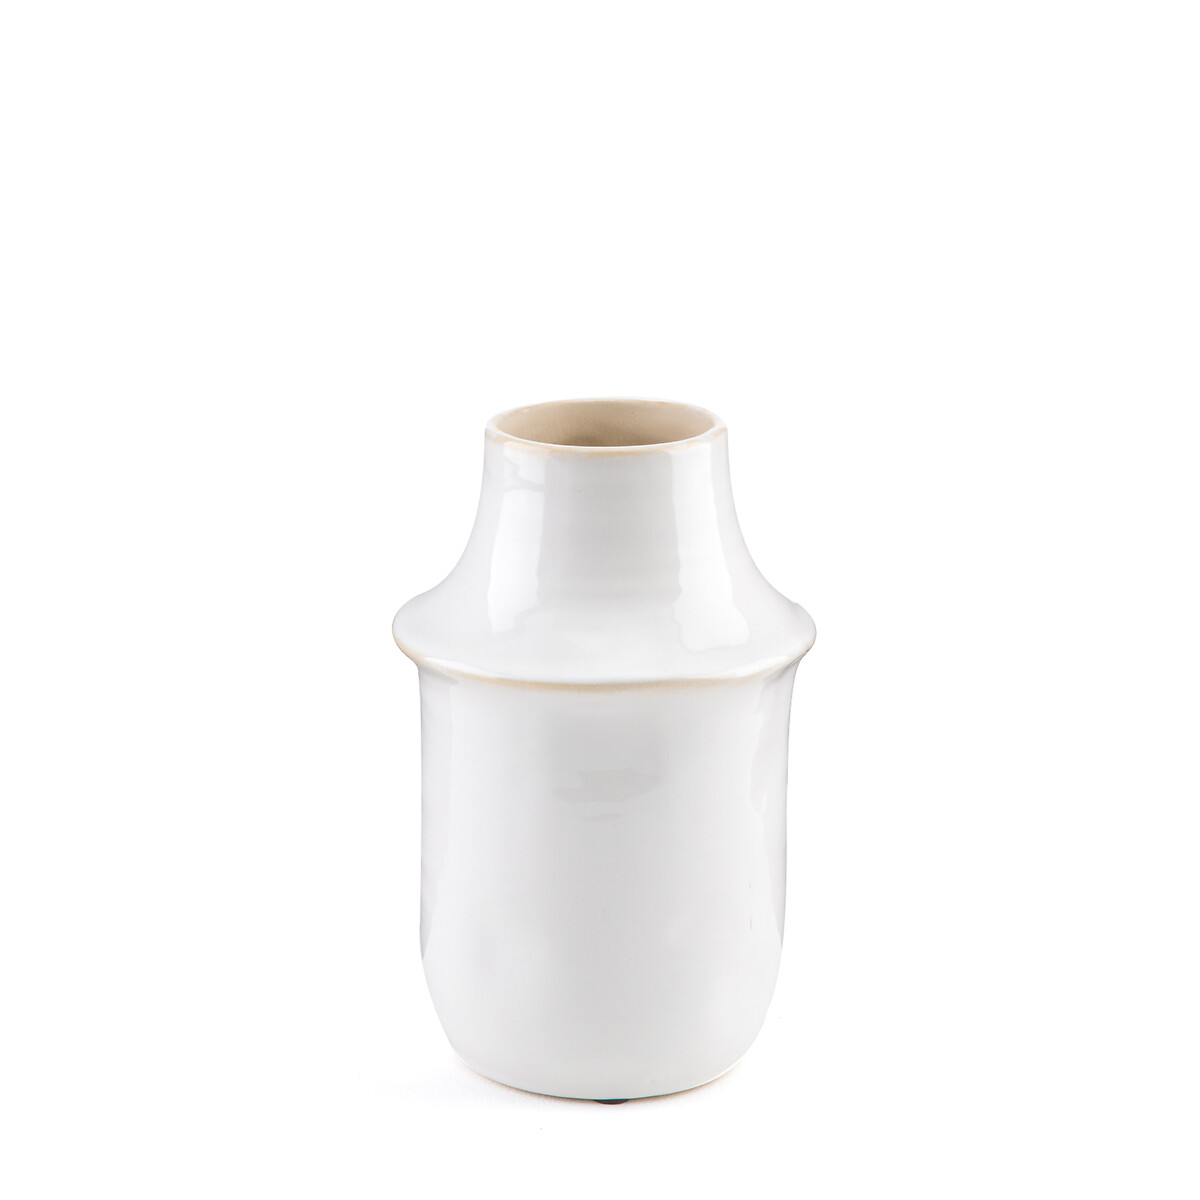 ваза из керамики в23 см filipio единый размер белый Ваза из керамики В23 см Filipio единый размер белый